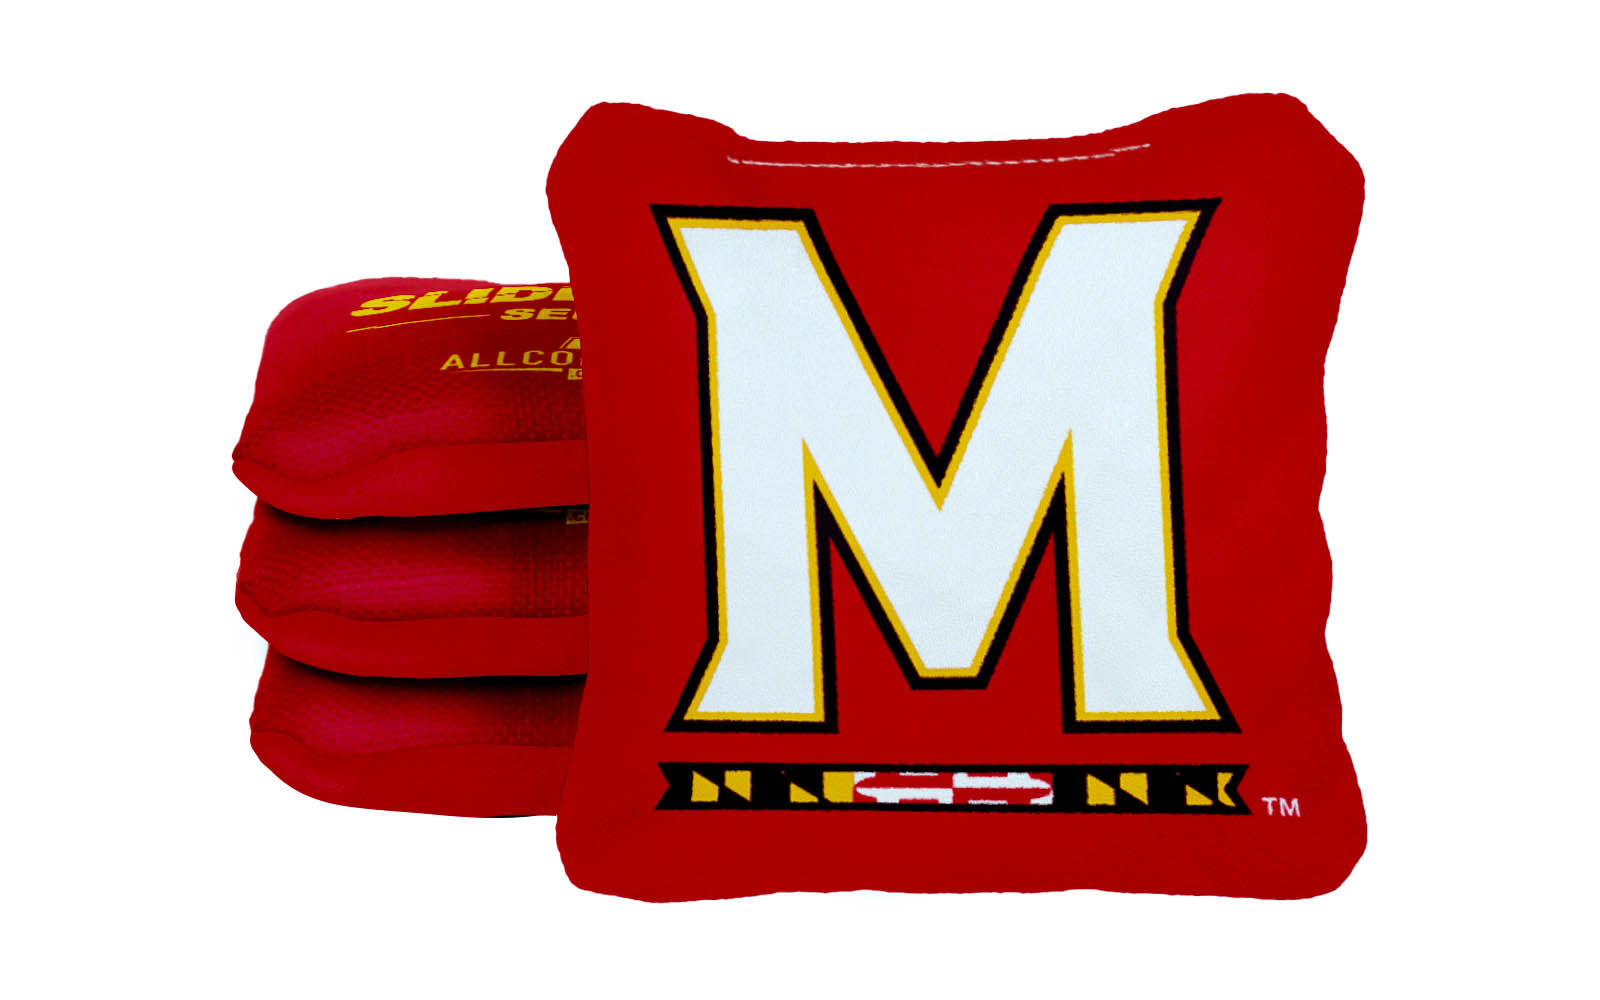 Officially Licensed Collegiate Cornhole Bags - AllCornhole Slide Rite - Set of 4 - University of Maryland